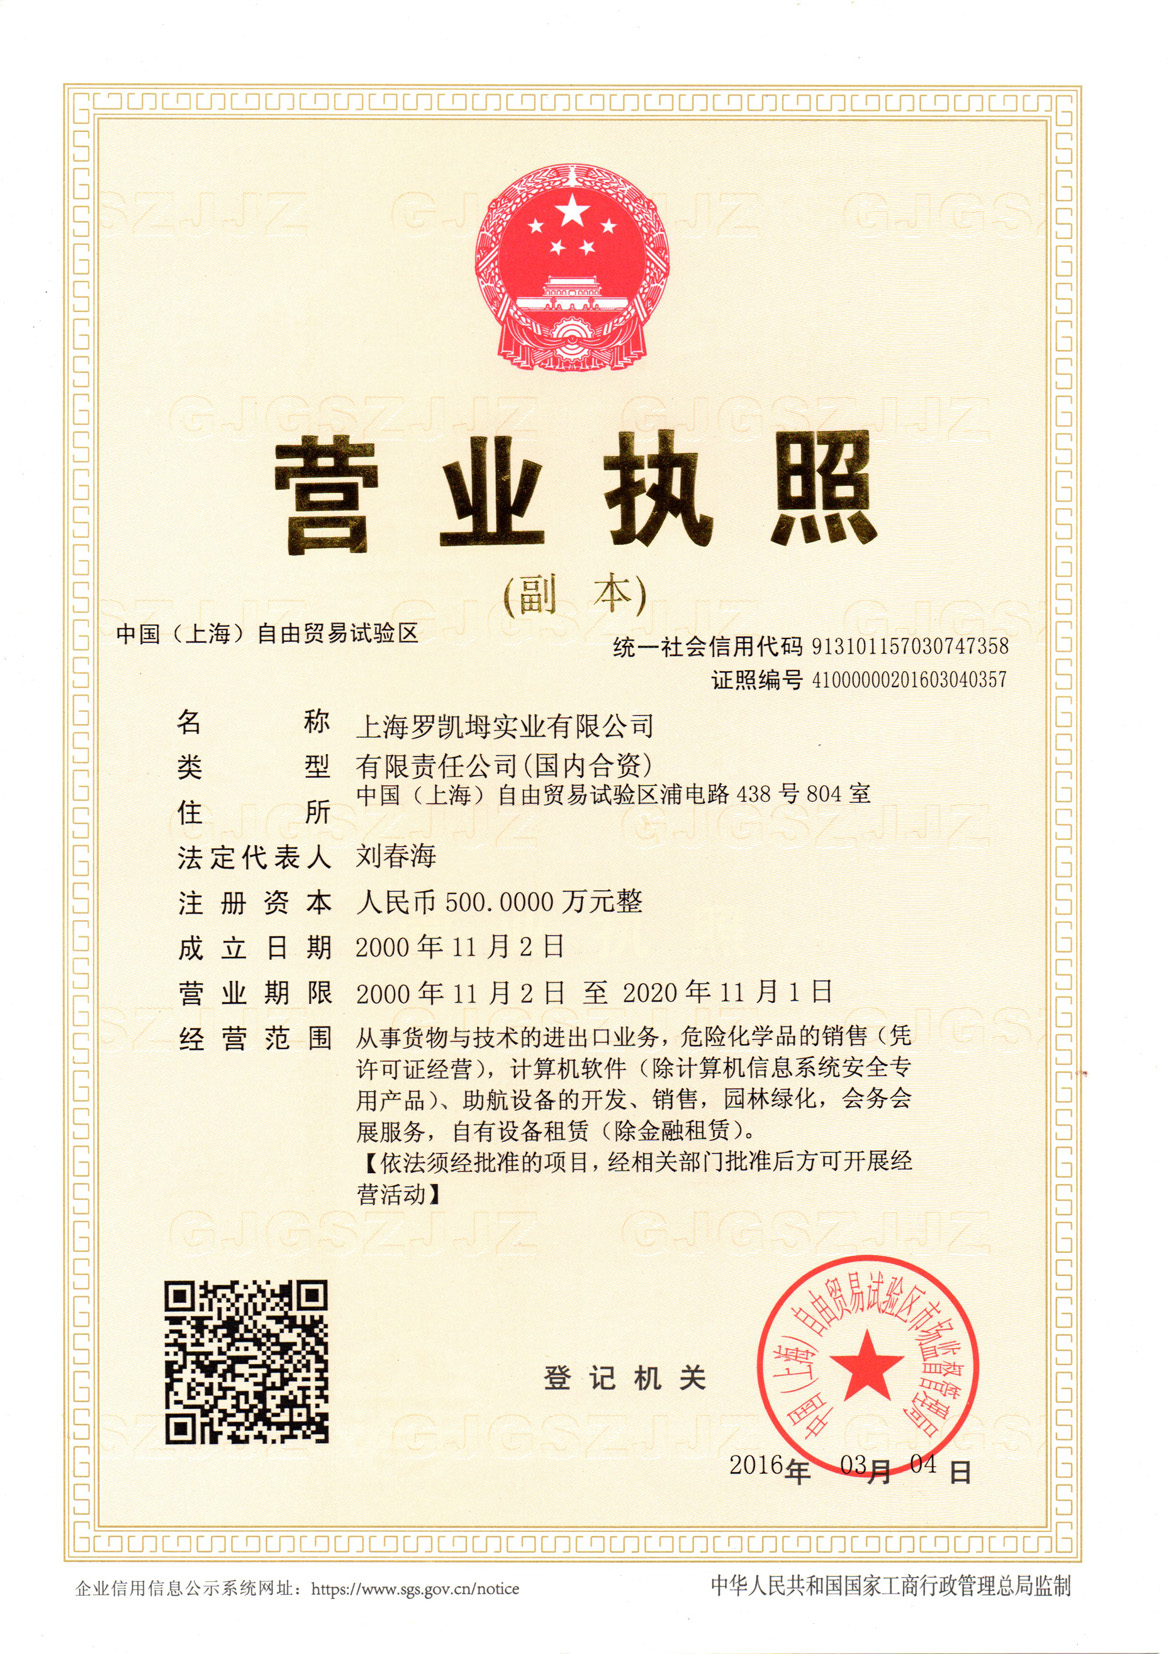 Shanghai Rokem business license 